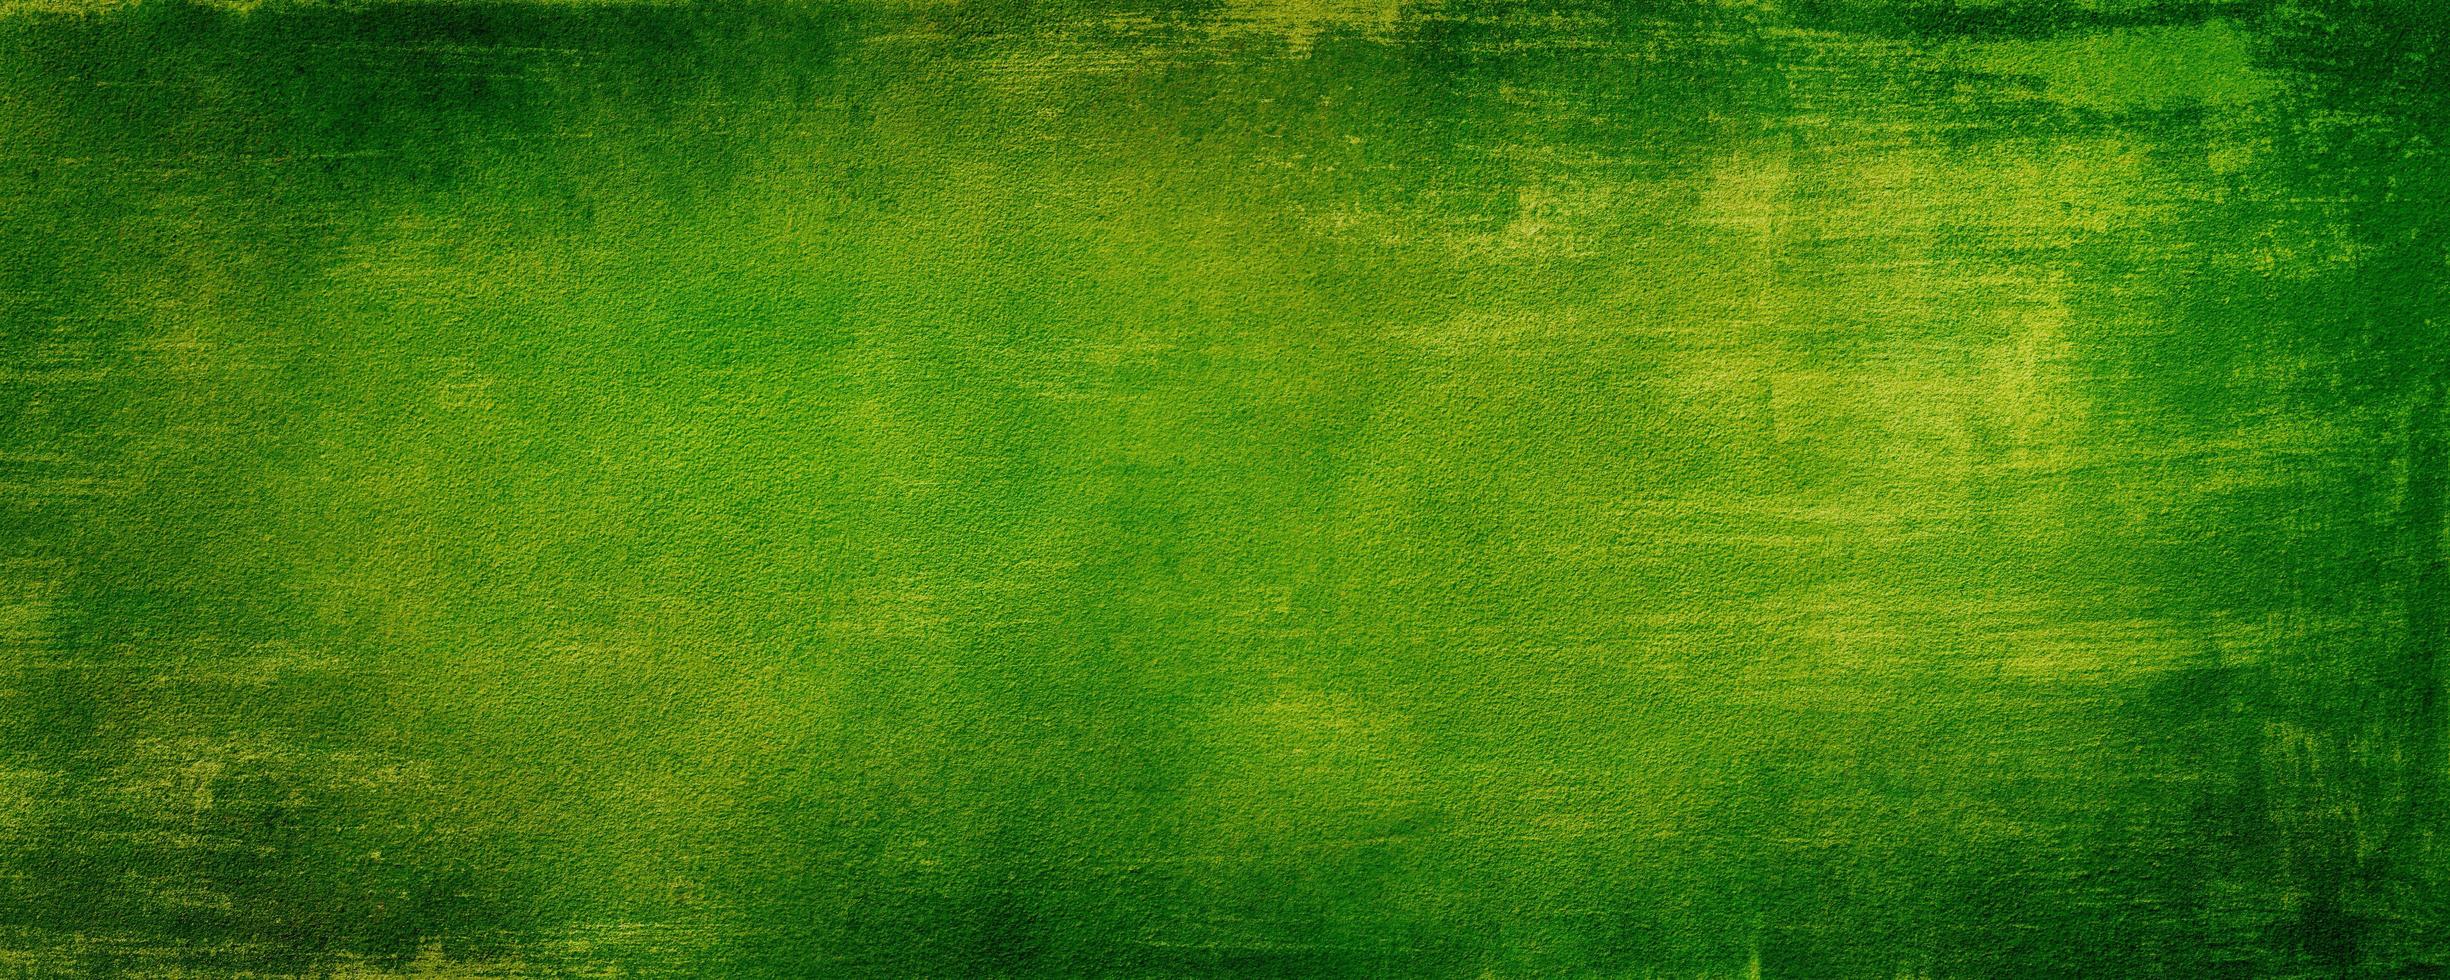 astratto muro di cemento verde con sfondo graffiato, colore pastello, sfondo moderno calcestruzzo con tessitura ruvida, lavagna. struttura stilizzata ruvida di arte concreta foto